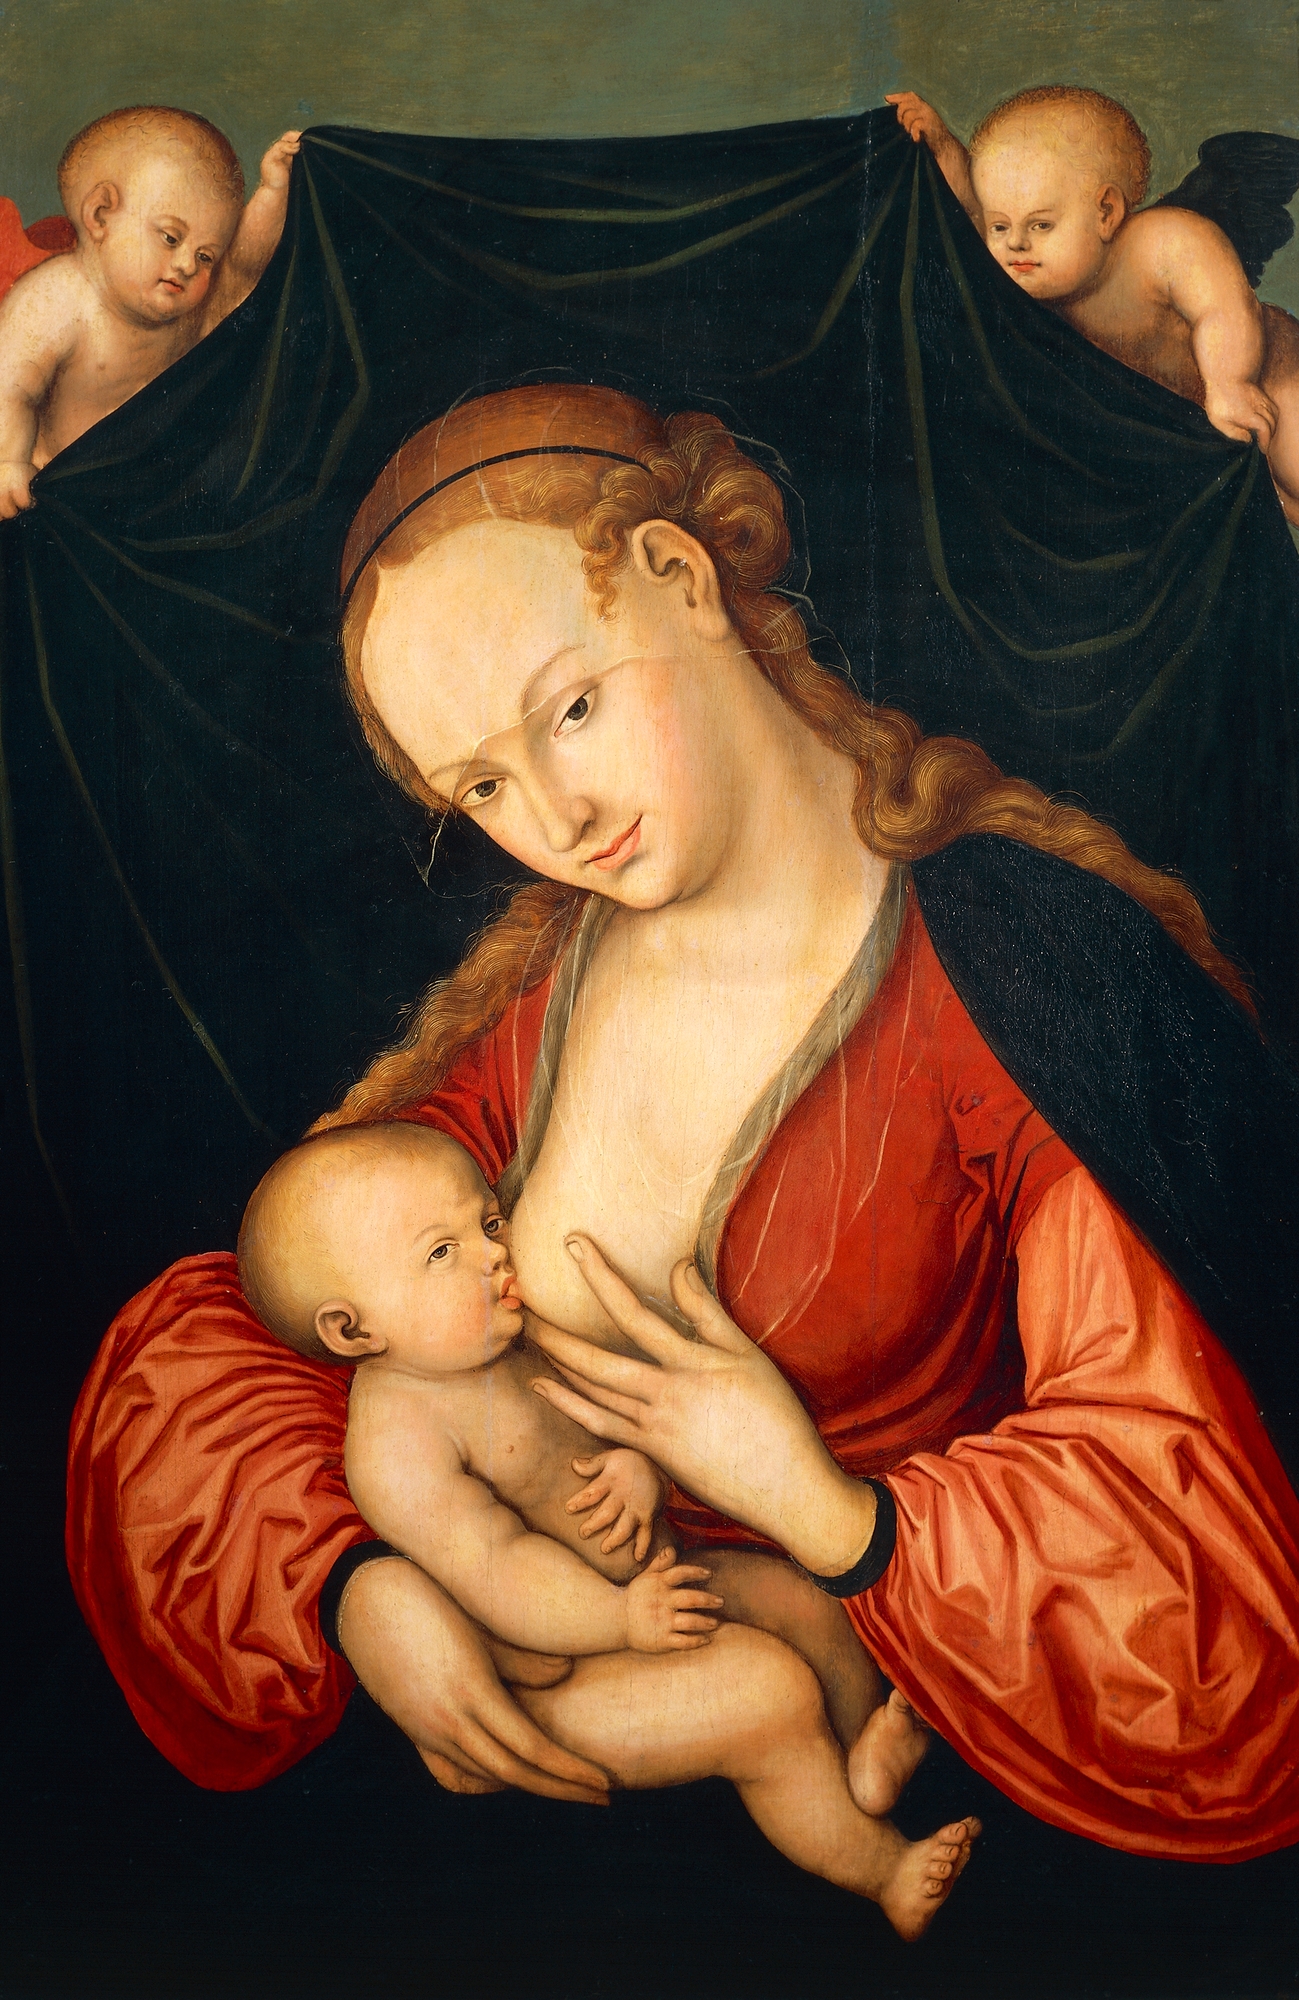 Lucas Cranach, Virgin Mary Suckling Jesus, after 1537